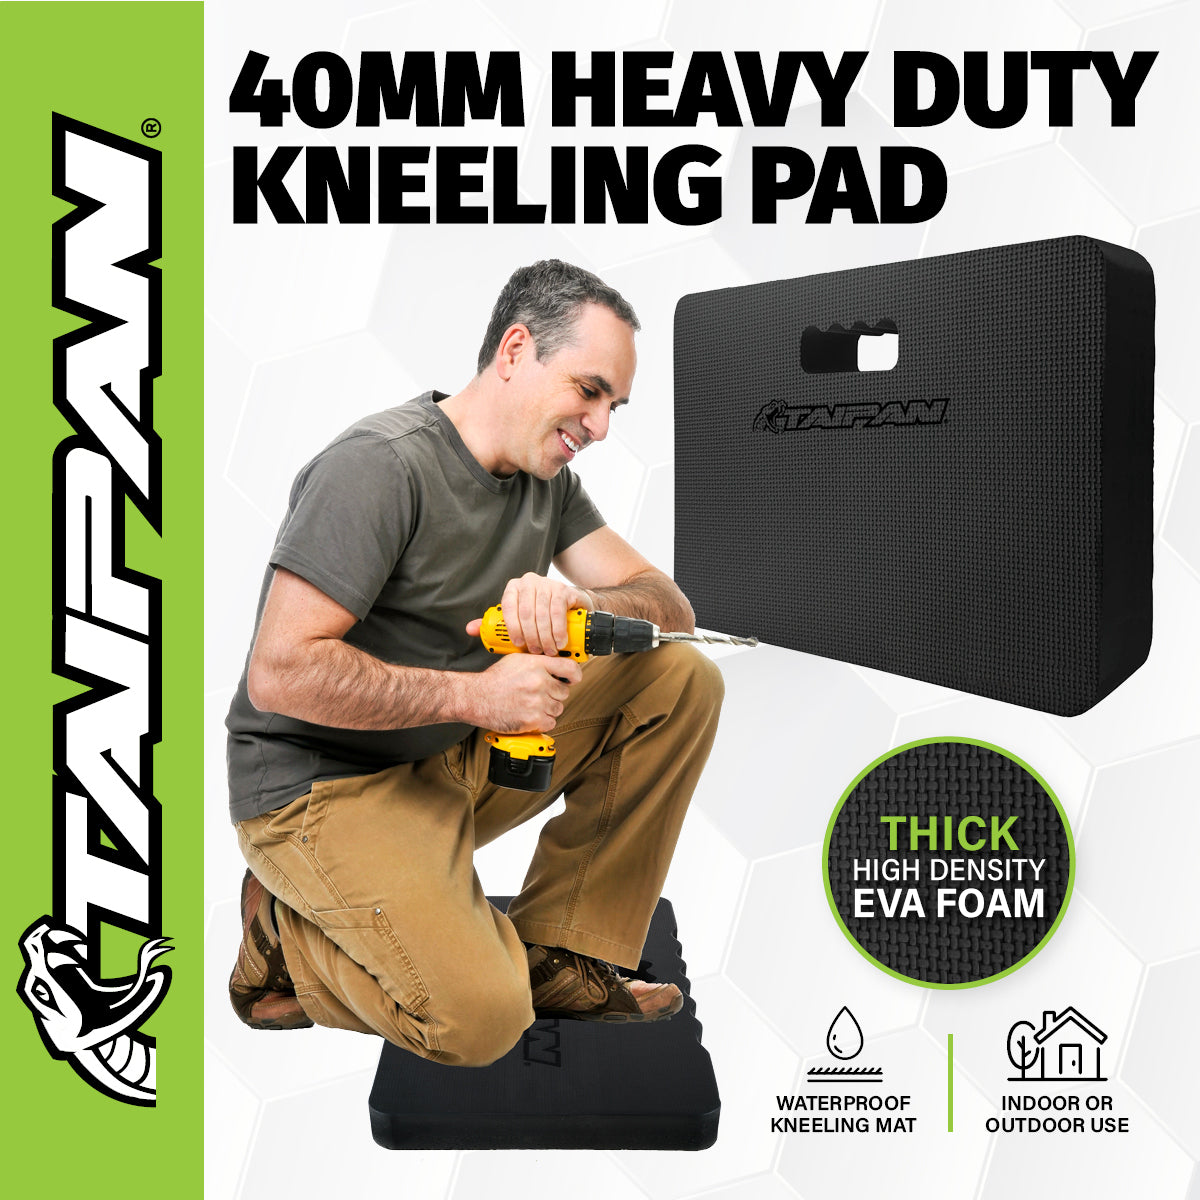 Taipan Kneeling Pad Heavy Duty High Density EVA Foam Waterproof 440 x 300mm